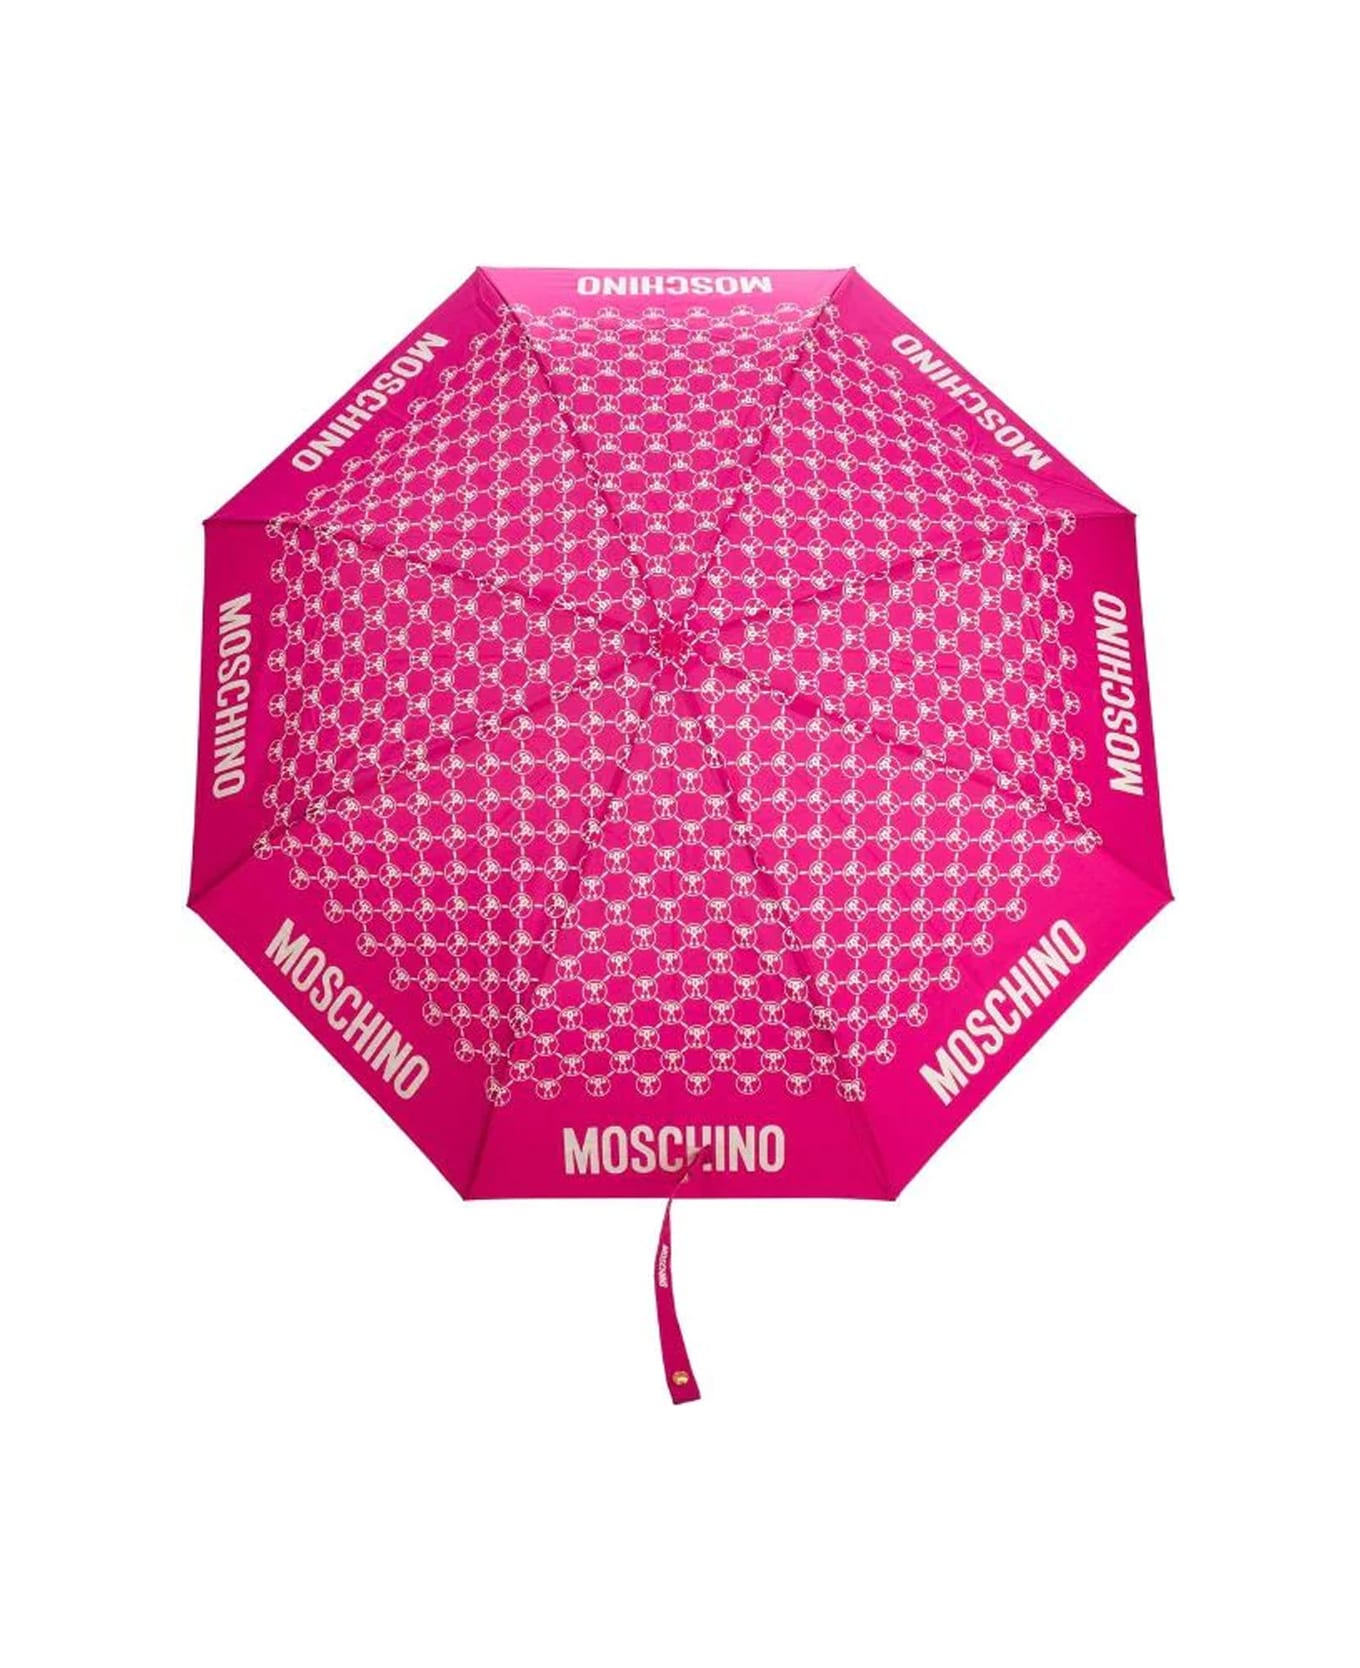 Moschino Dqm Allover Mini Aoc Umbrella - Only 1 left